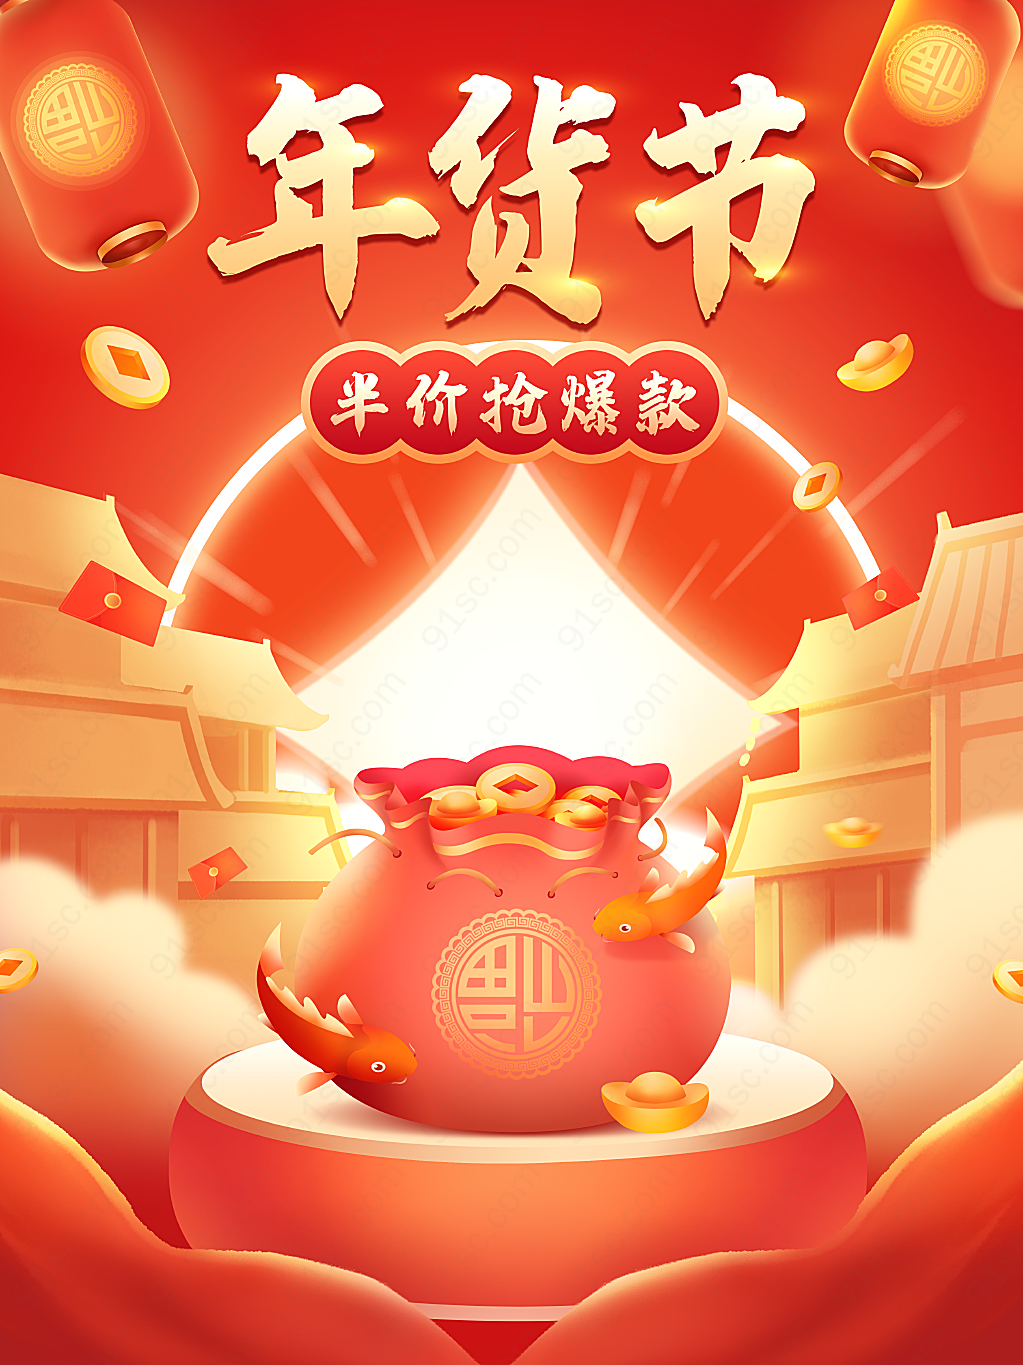 原创手绘喜庆中国风年货节促销促销促销海报